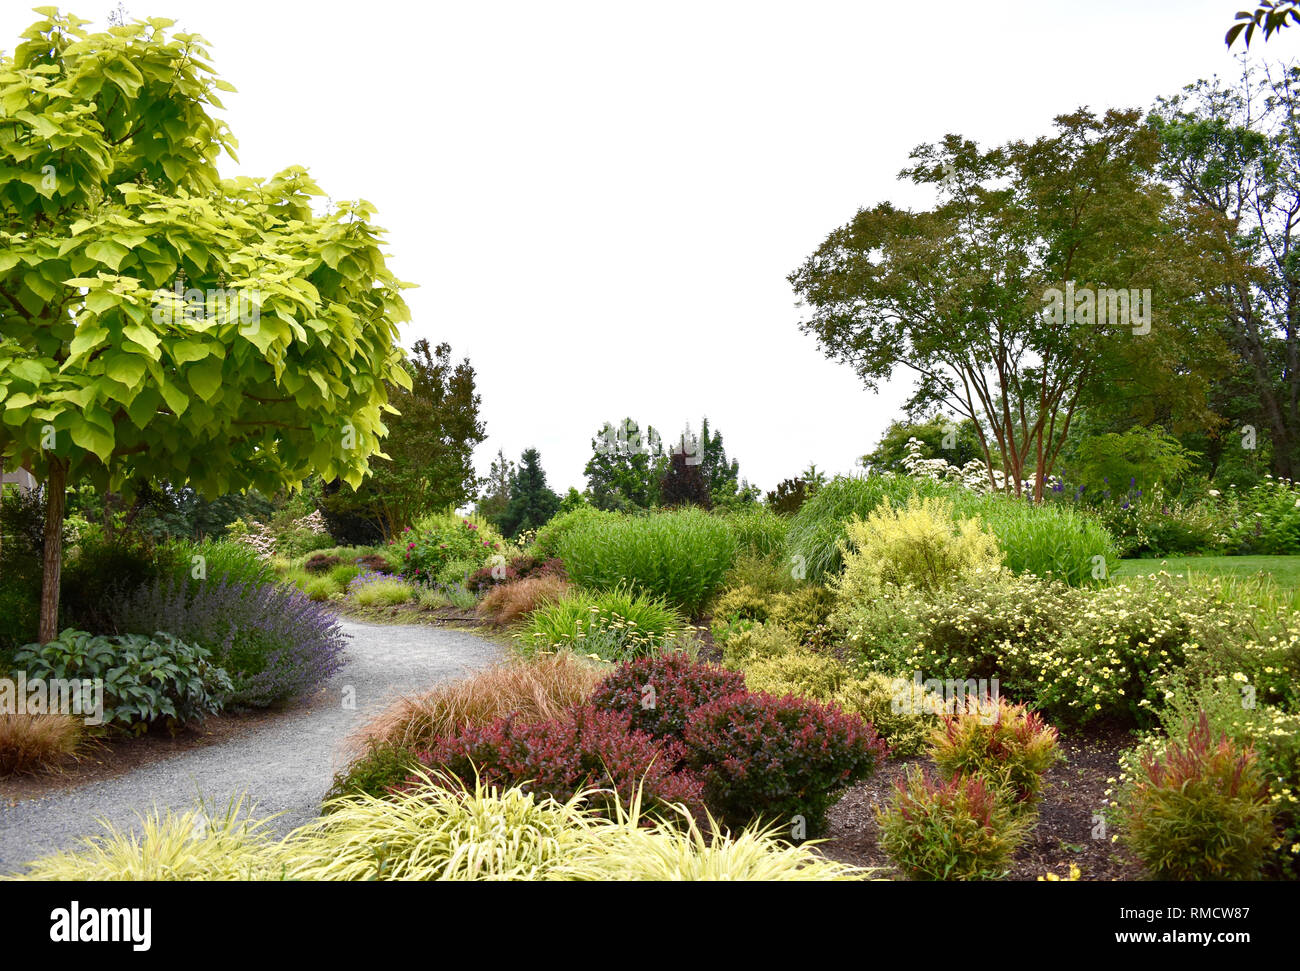 Bellevue Botanical Garden, Bellevue, Washington, in Washington state, USA Stock Photo